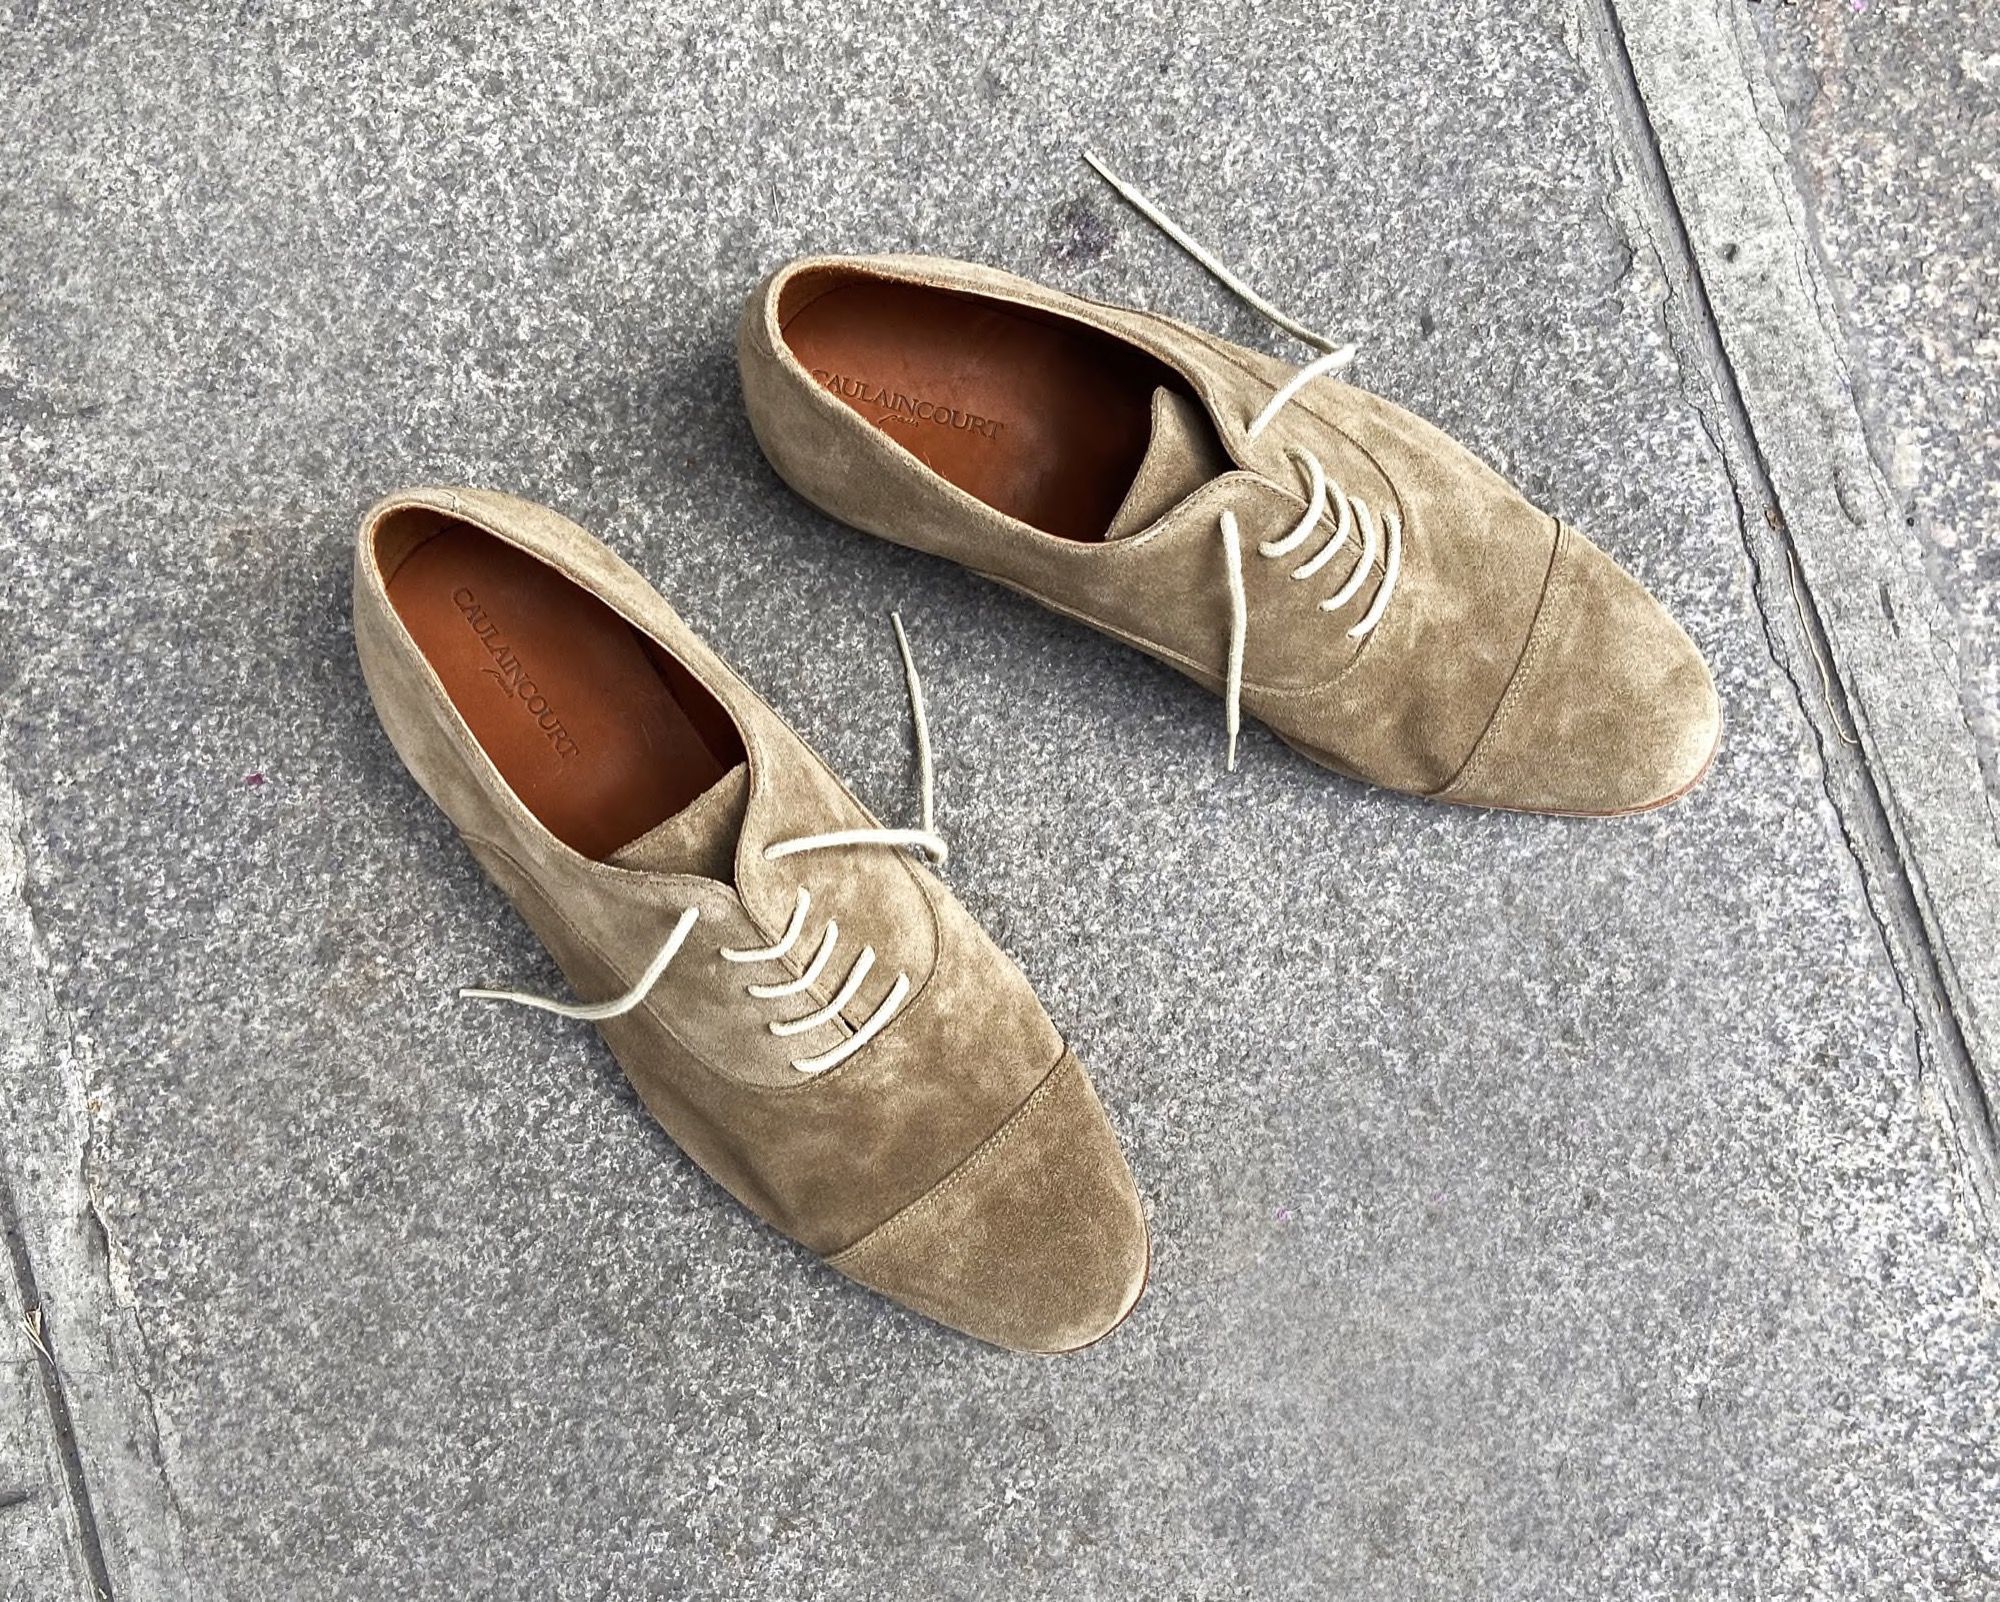 Chal Jooti Magnetic Metallic Stone Embellished Wedding Sneakers | Grey,  Synthetic Leather, Embellished | Wedding sneakers, Closed toe heels, Grey  shoes